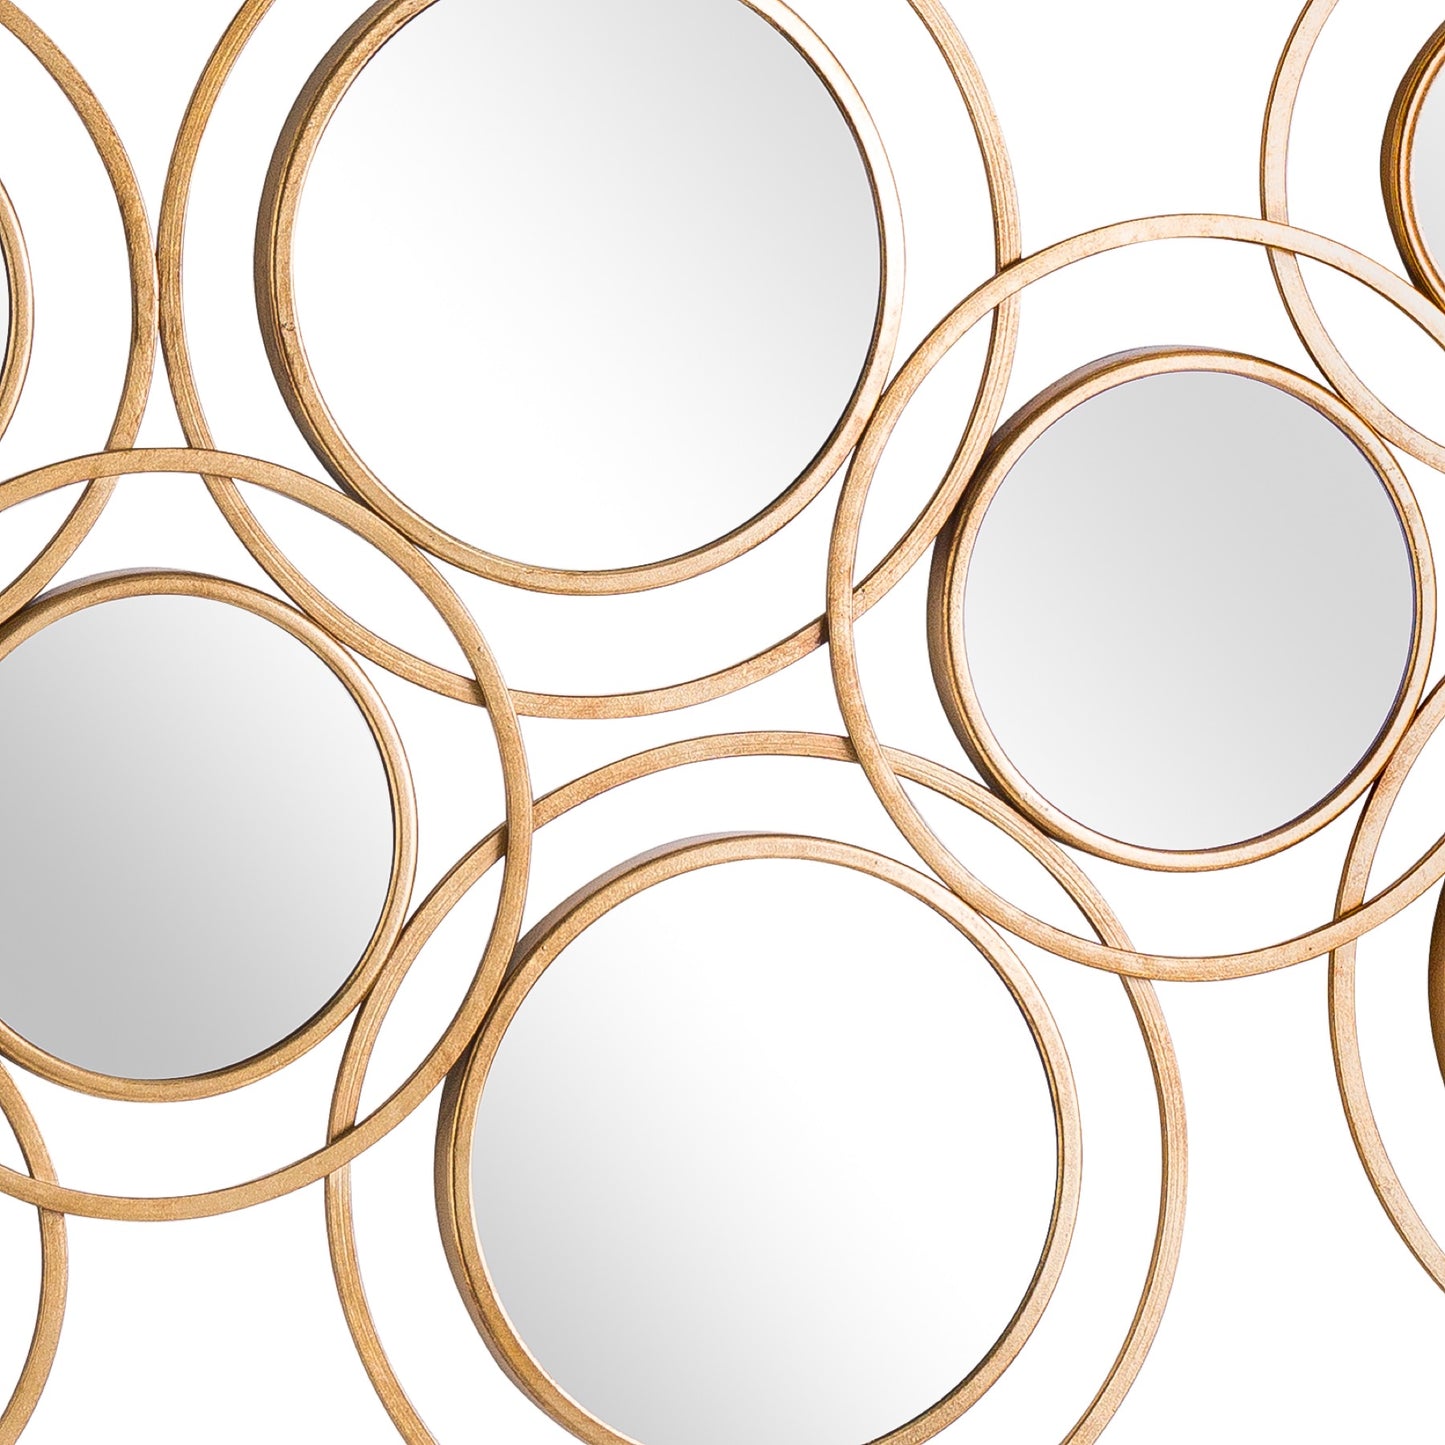 Abstract Gold Circular Wall Mirror